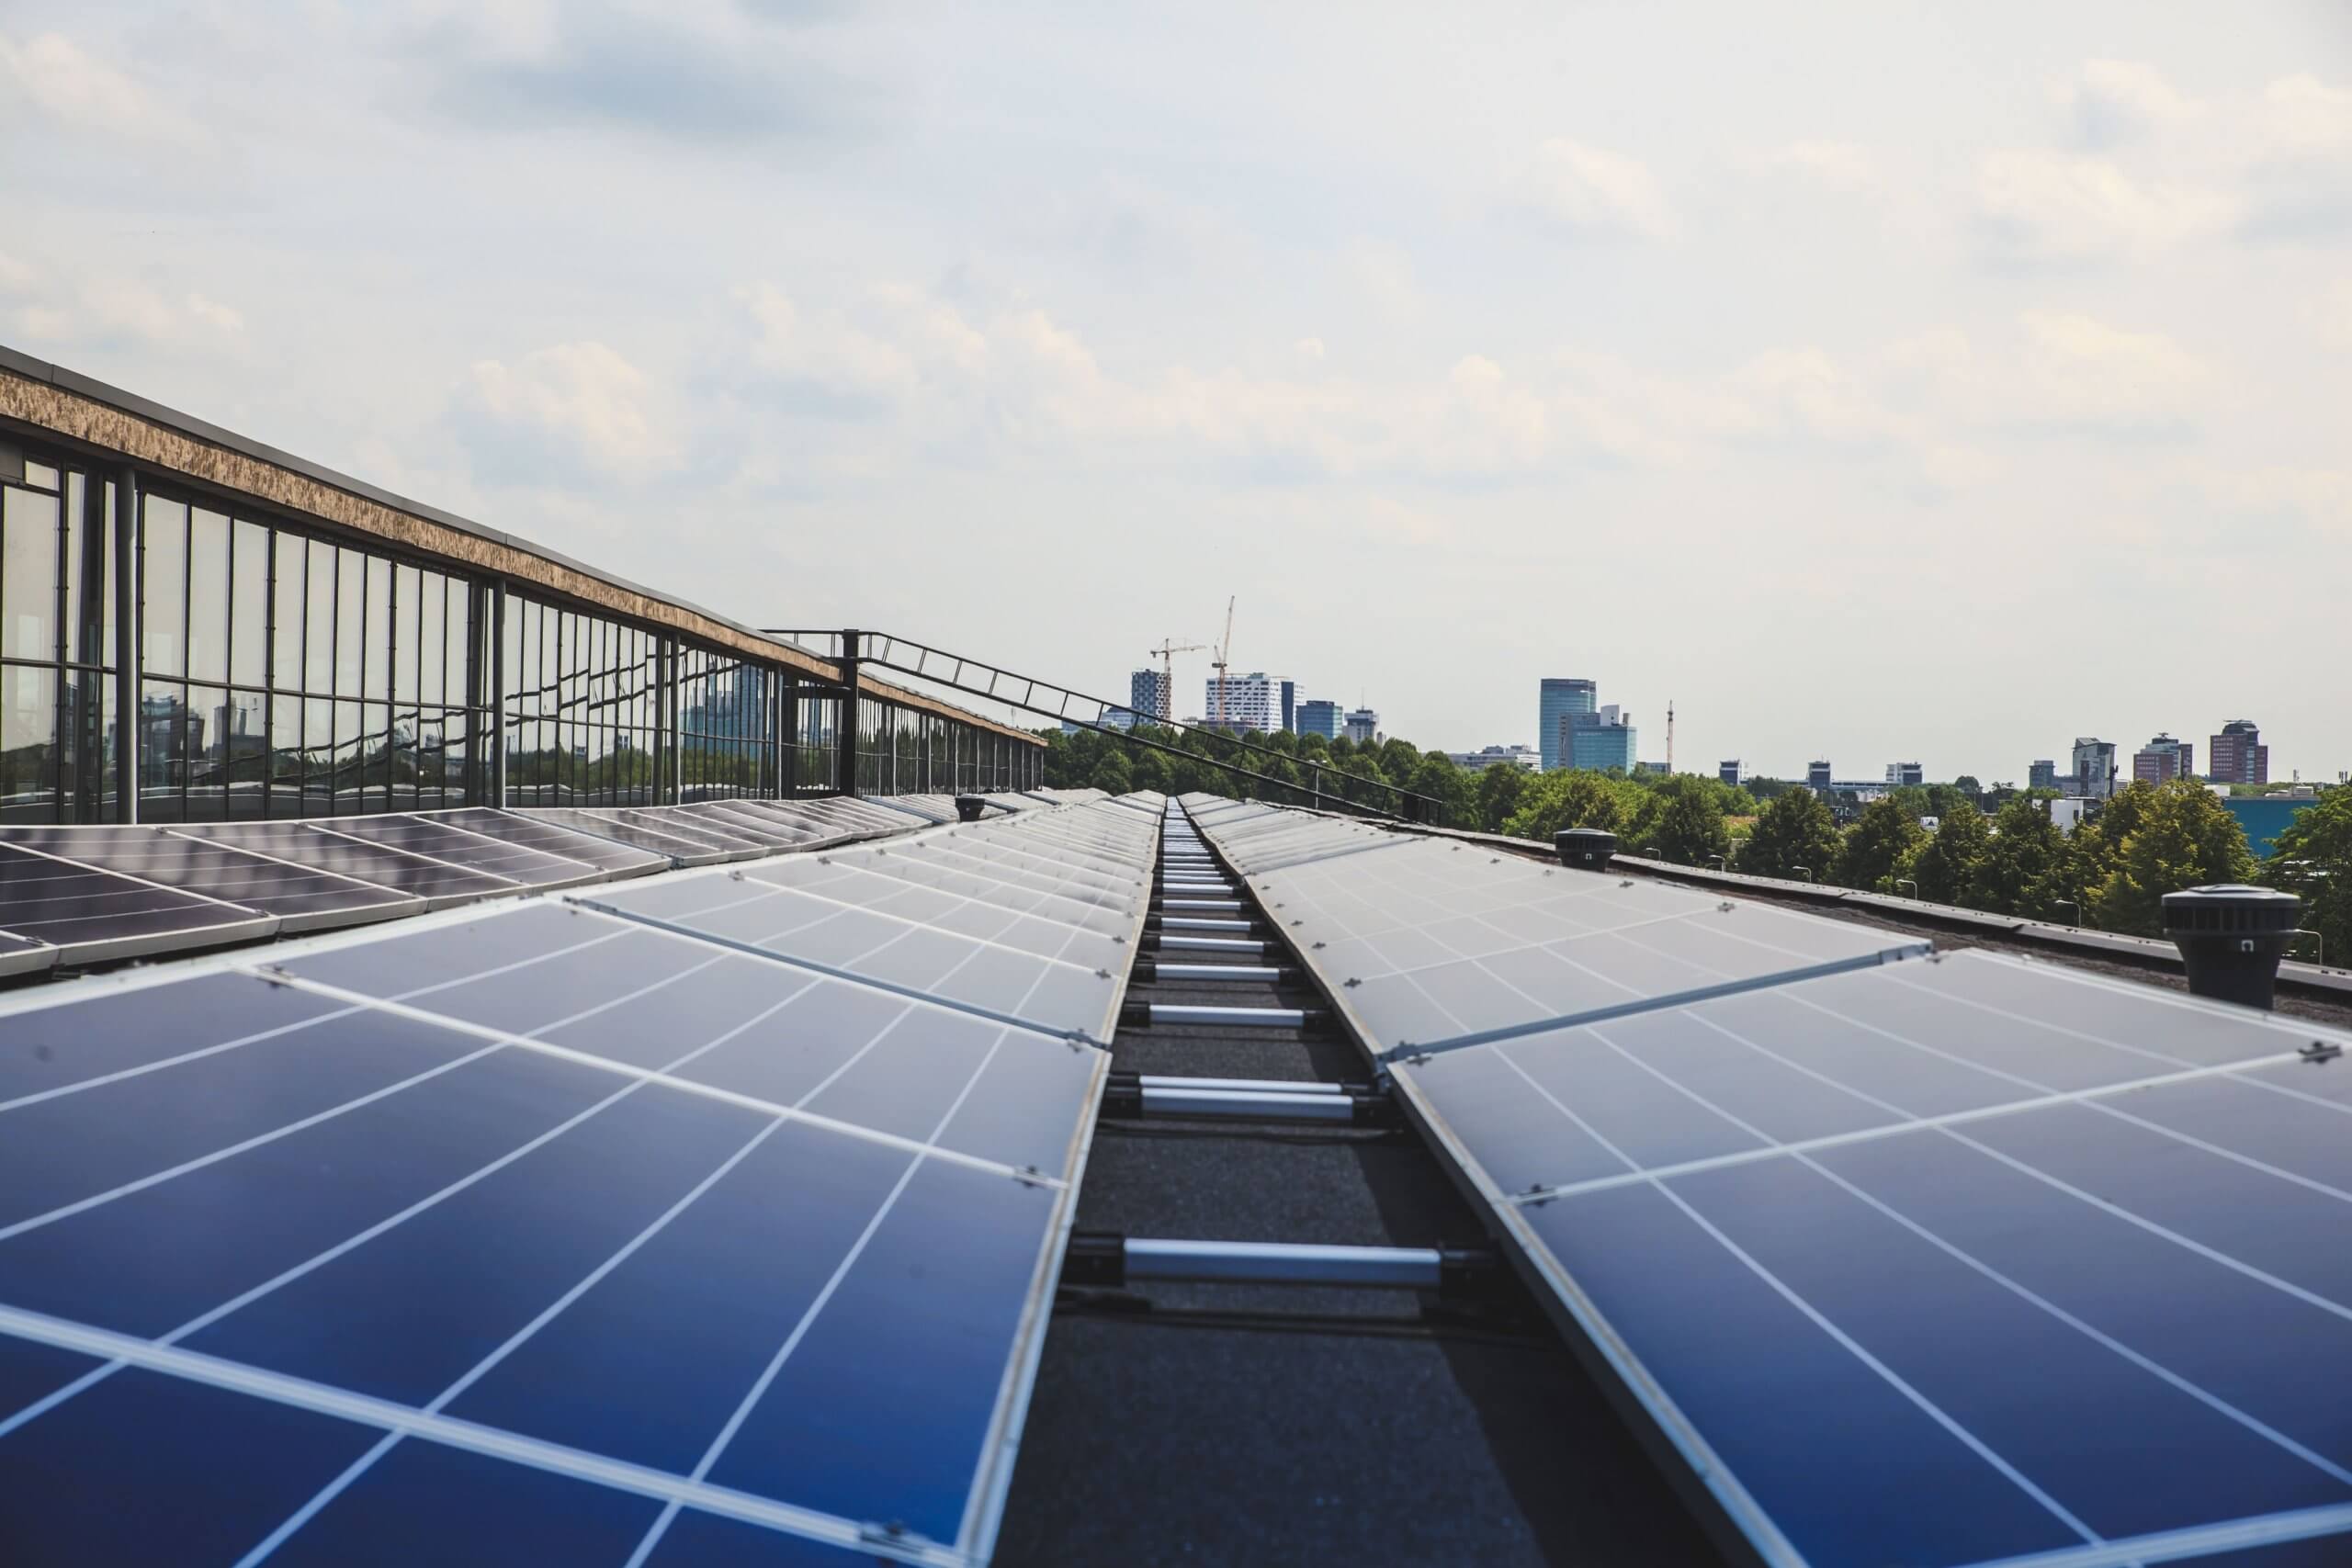 Inversor solar: tipos, para qué sirve y cómo elegir